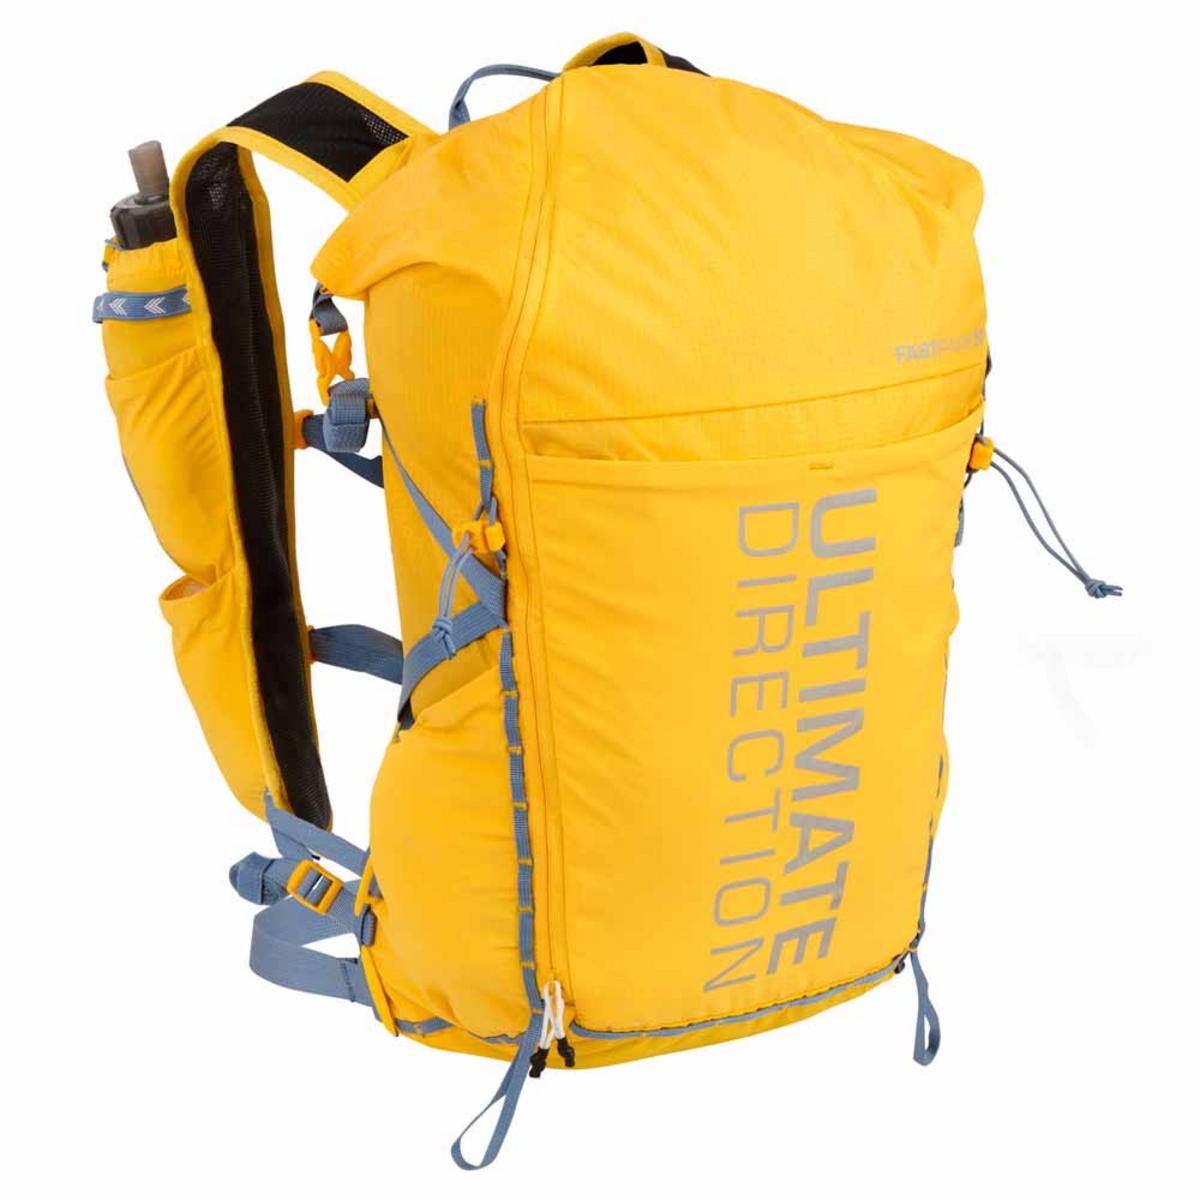 Ultimate Direction Fastpack 20L Backpack